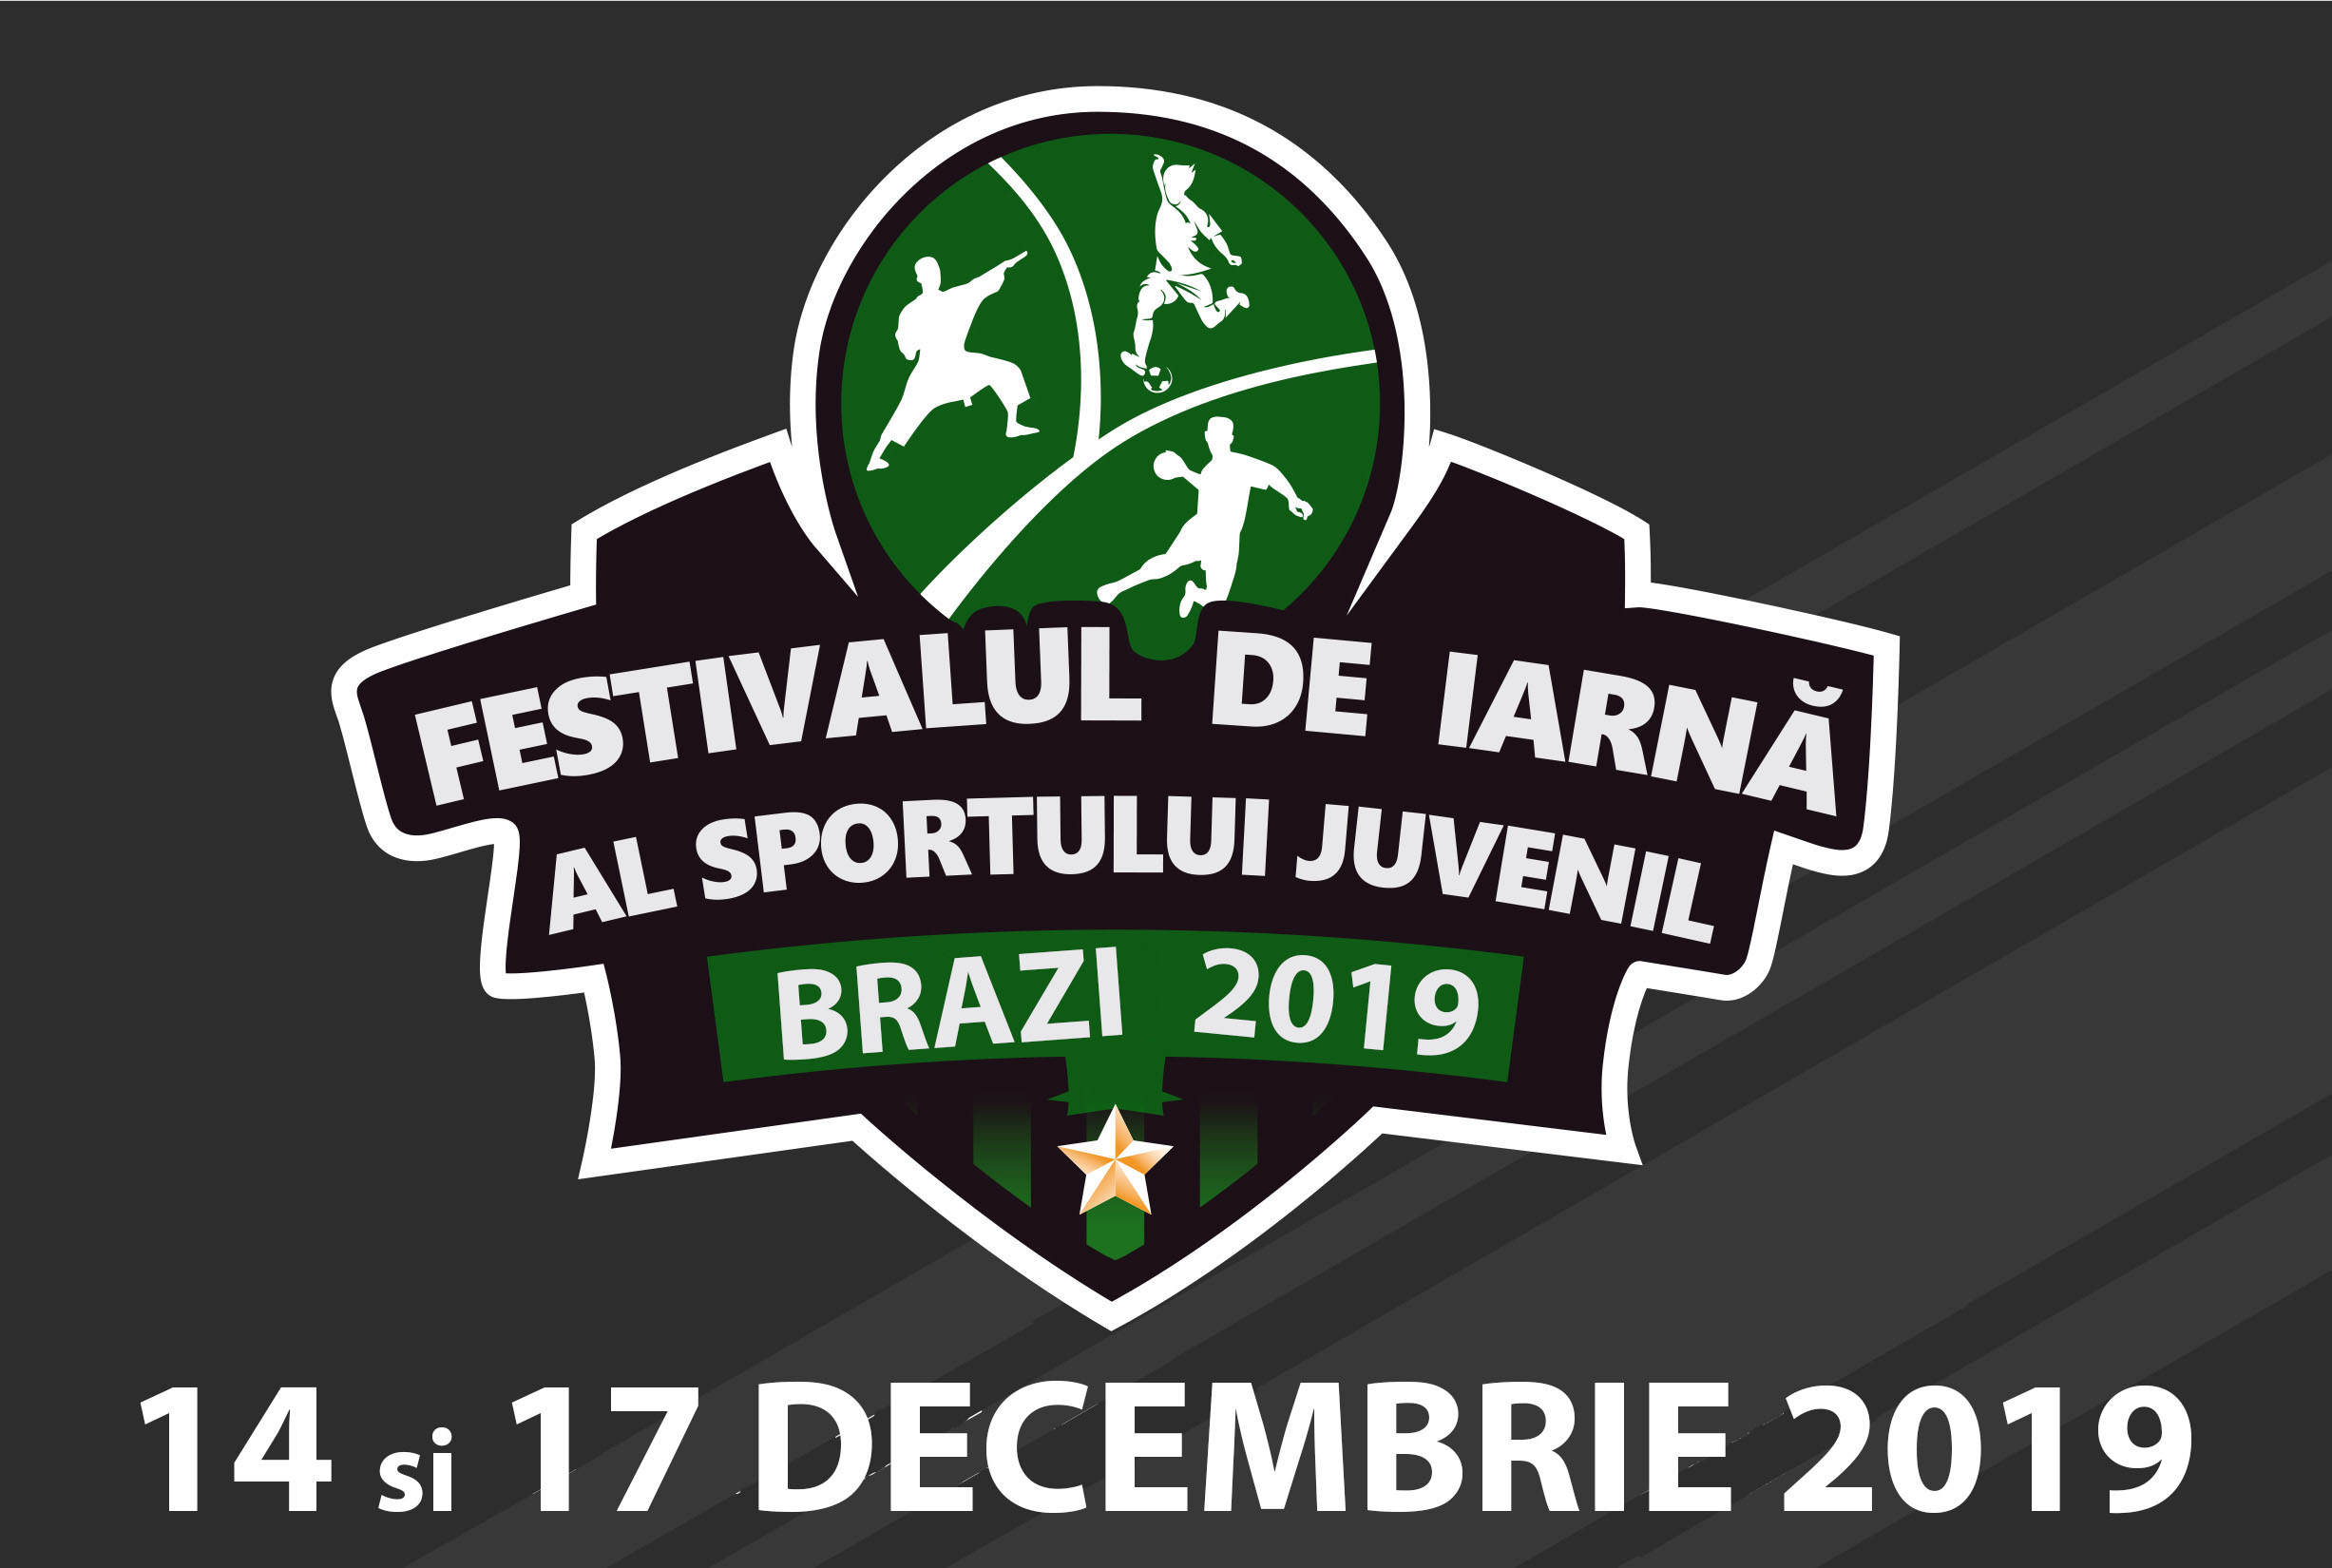 Festivalul de iarna al sportului juvenil